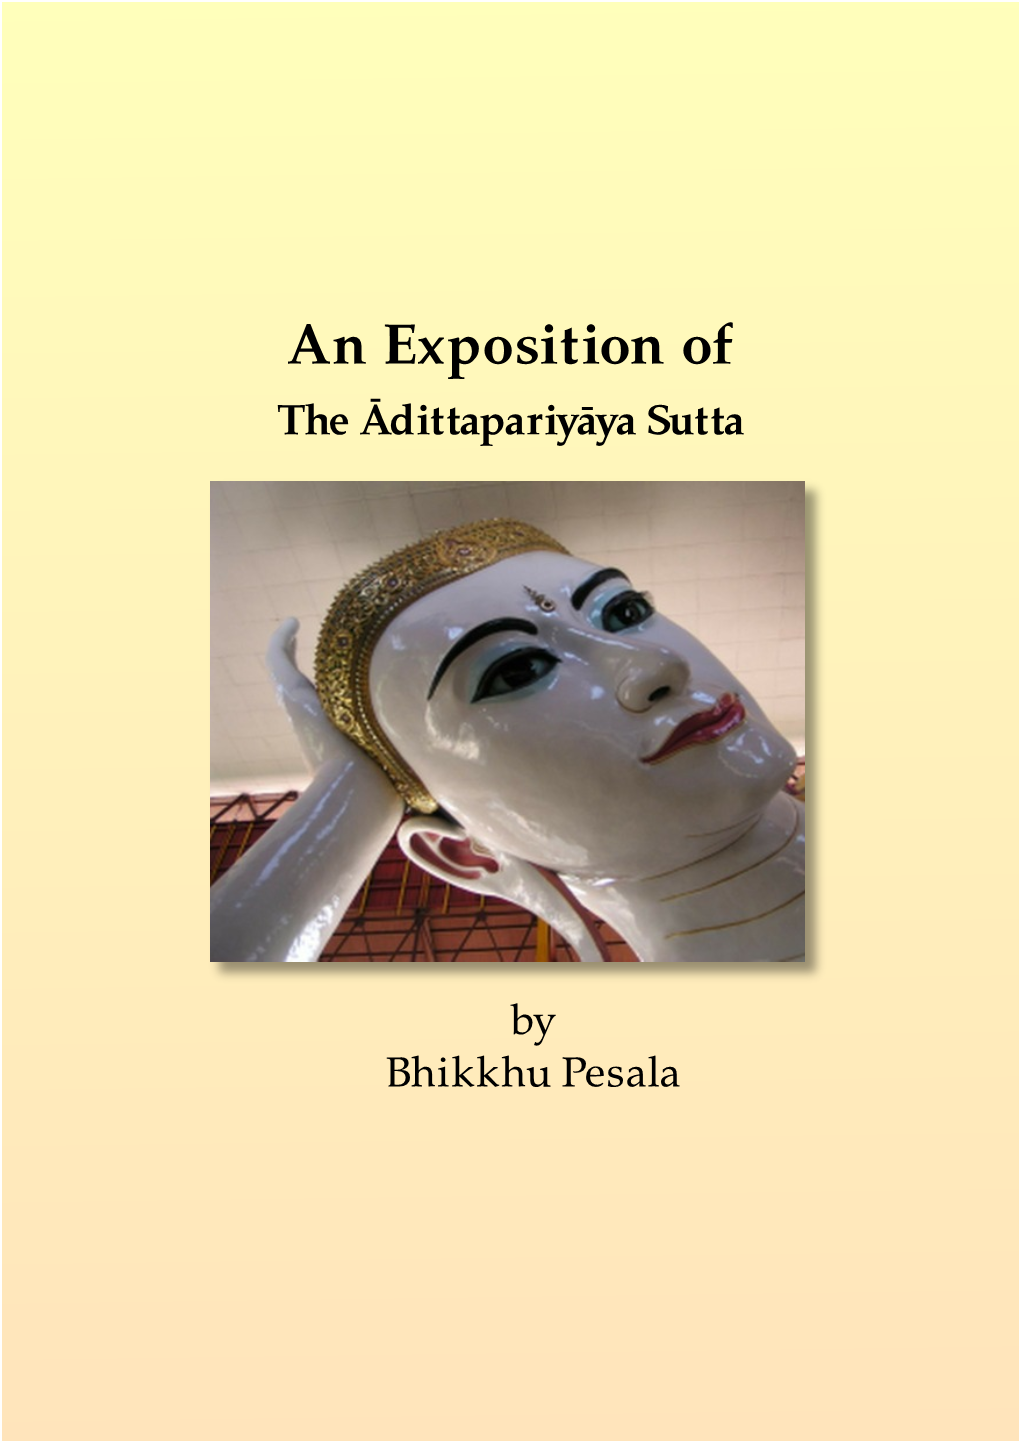 An Exposition of the Adittapariyaya Sutta